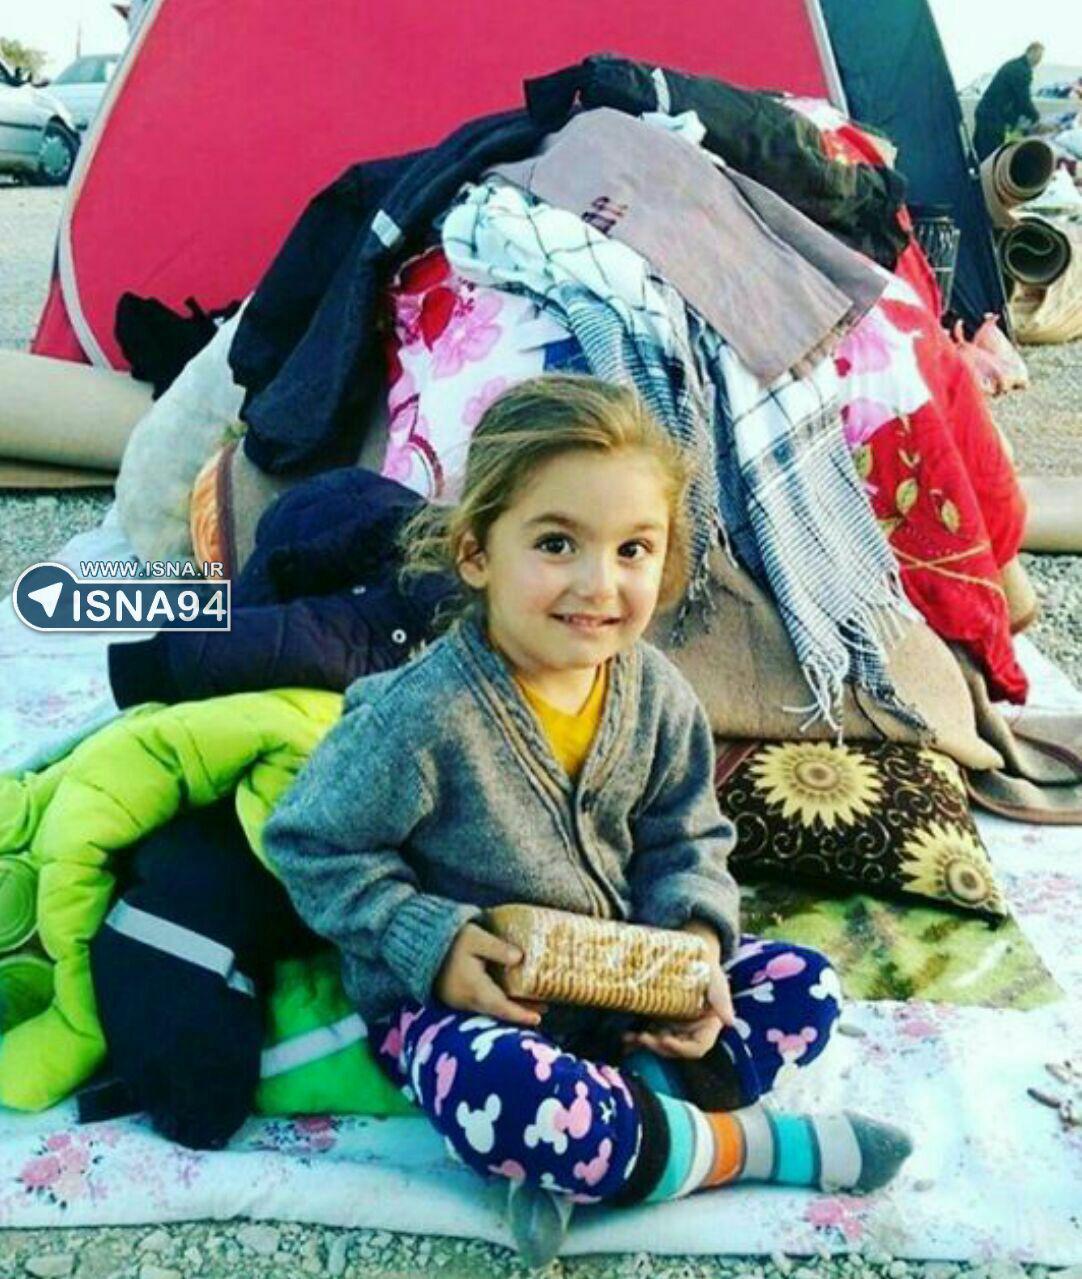 لبخند زیبا و امیدبخش دختر کوچک کرمانشاهی